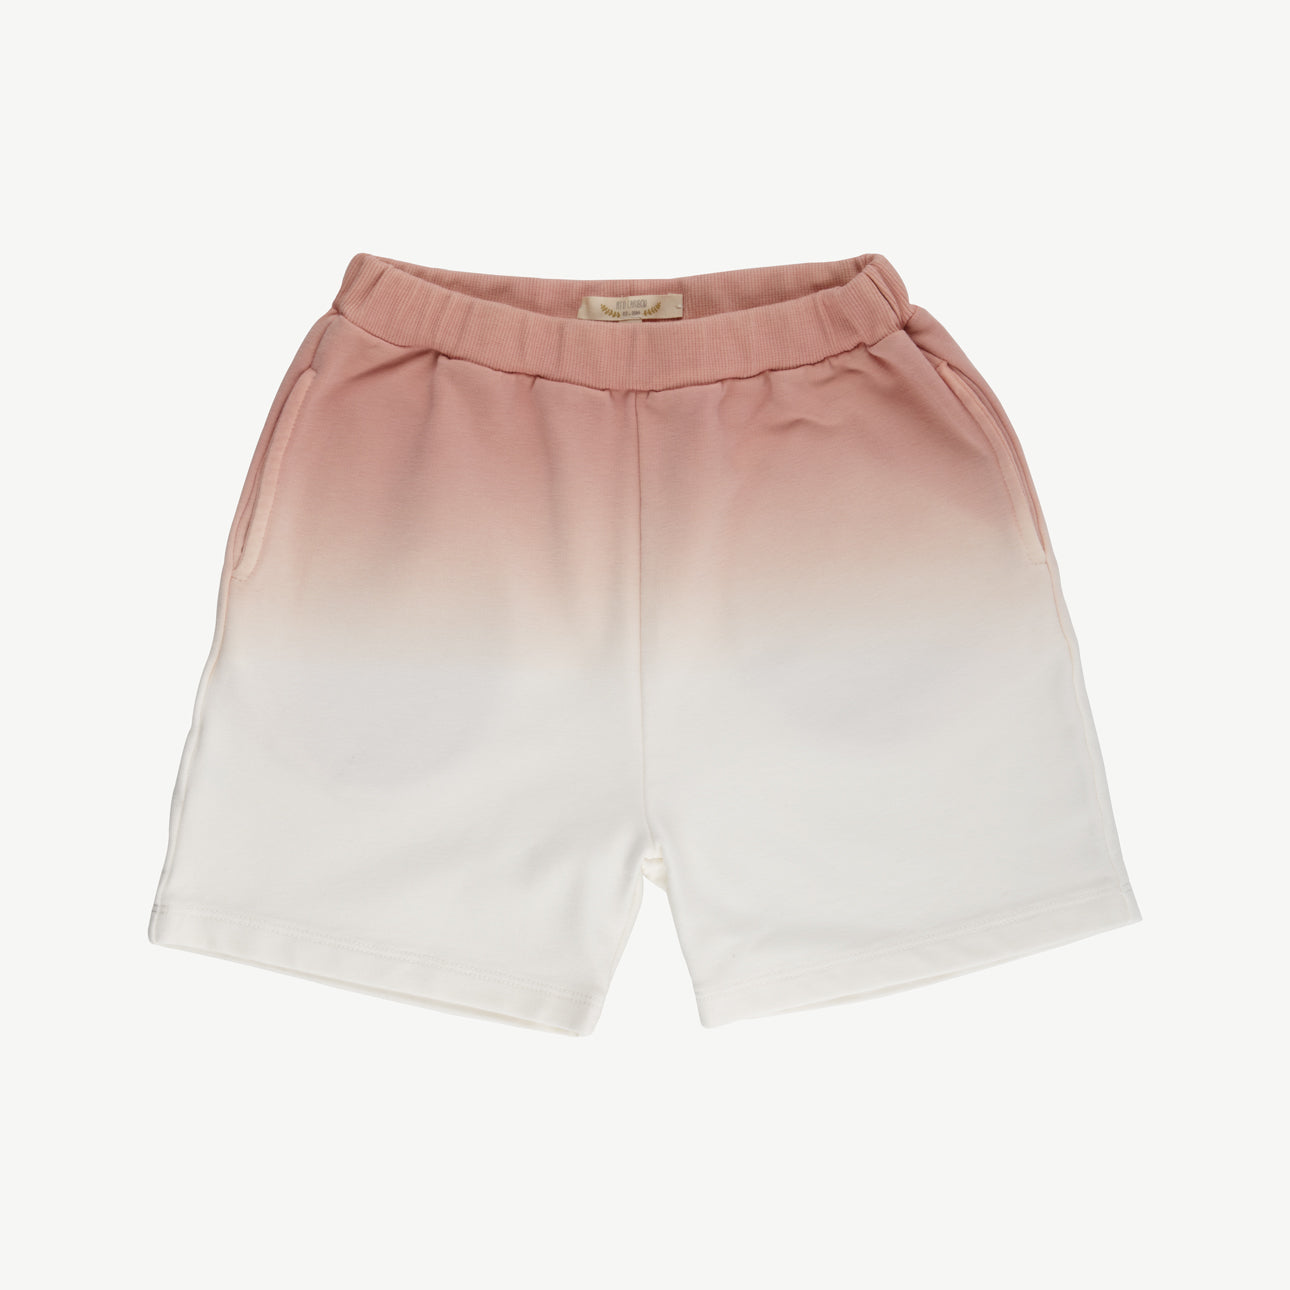 'plain-dip dye' ash rose shorts